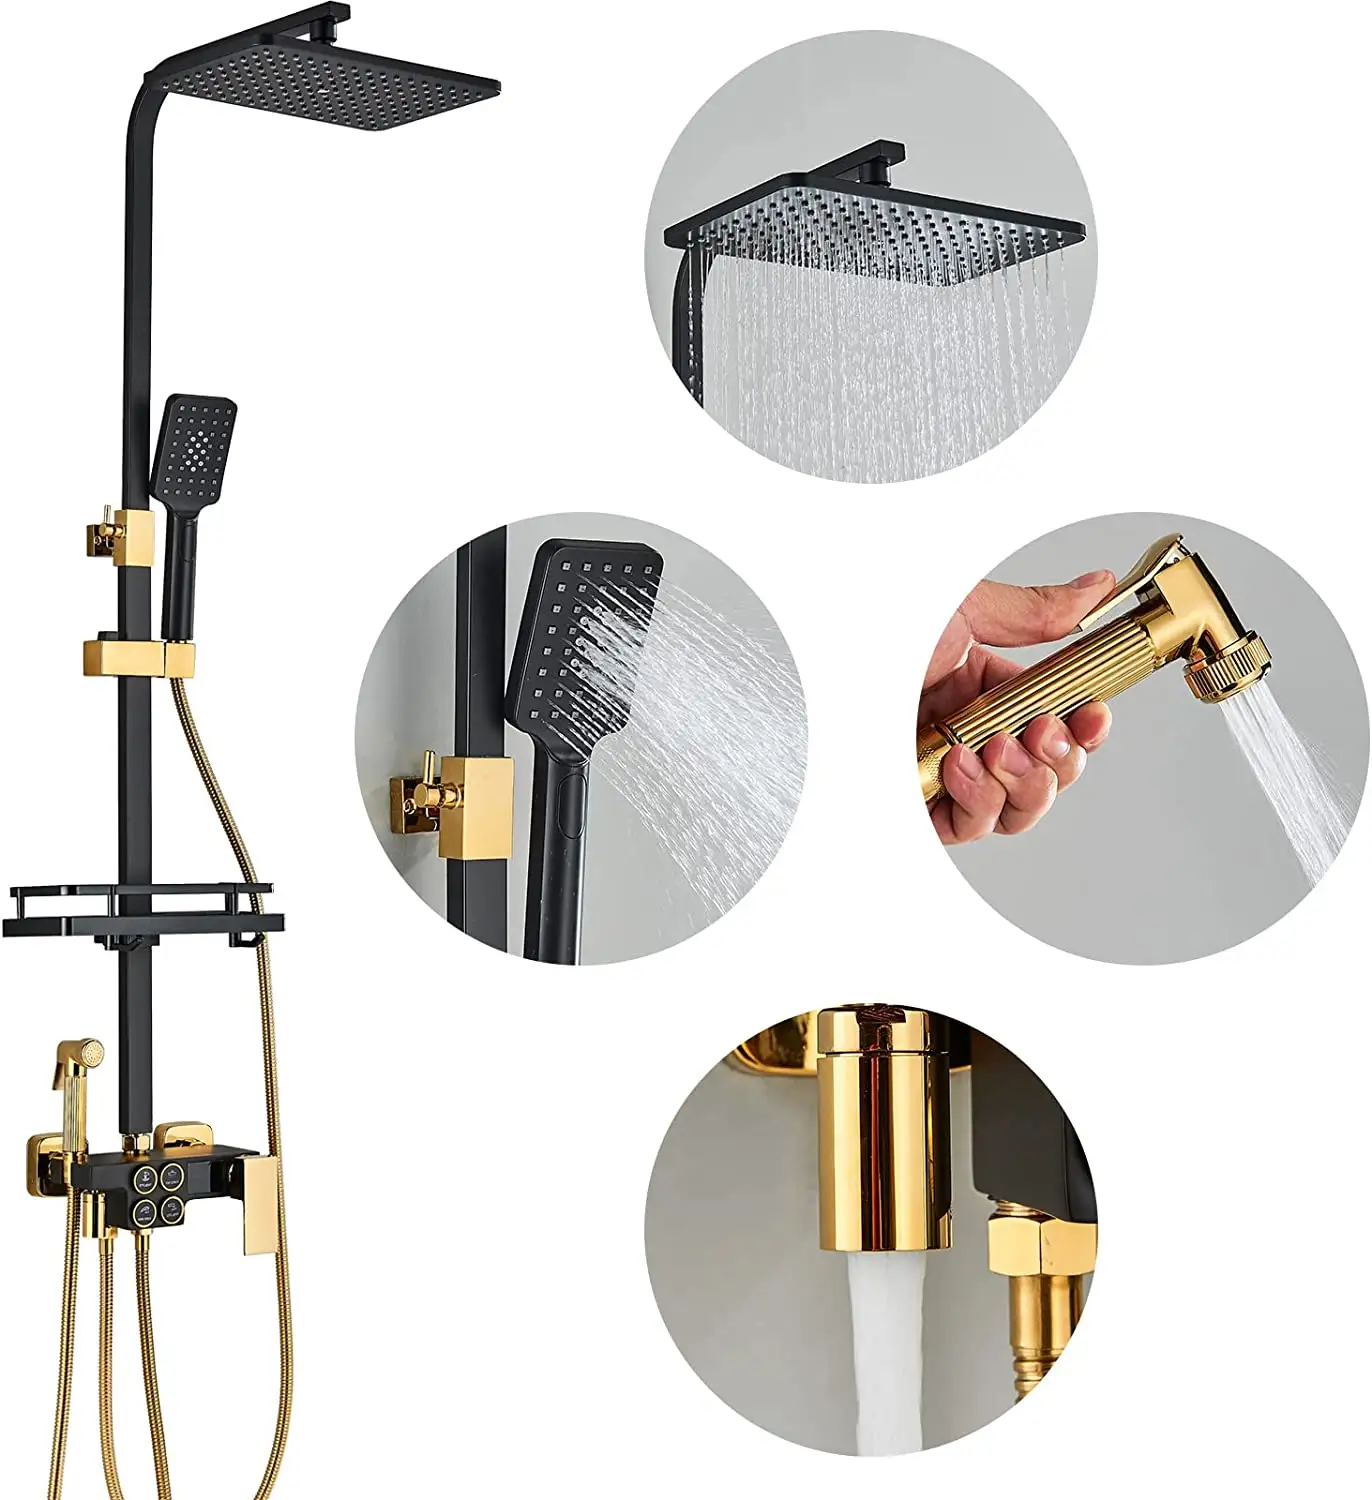 Banyo duvara monte 4-Way kontrol yağmur maruz duş Bar seti ile duş başlığı, akıllı siyah ve altın kaplama duş musluk sistemi